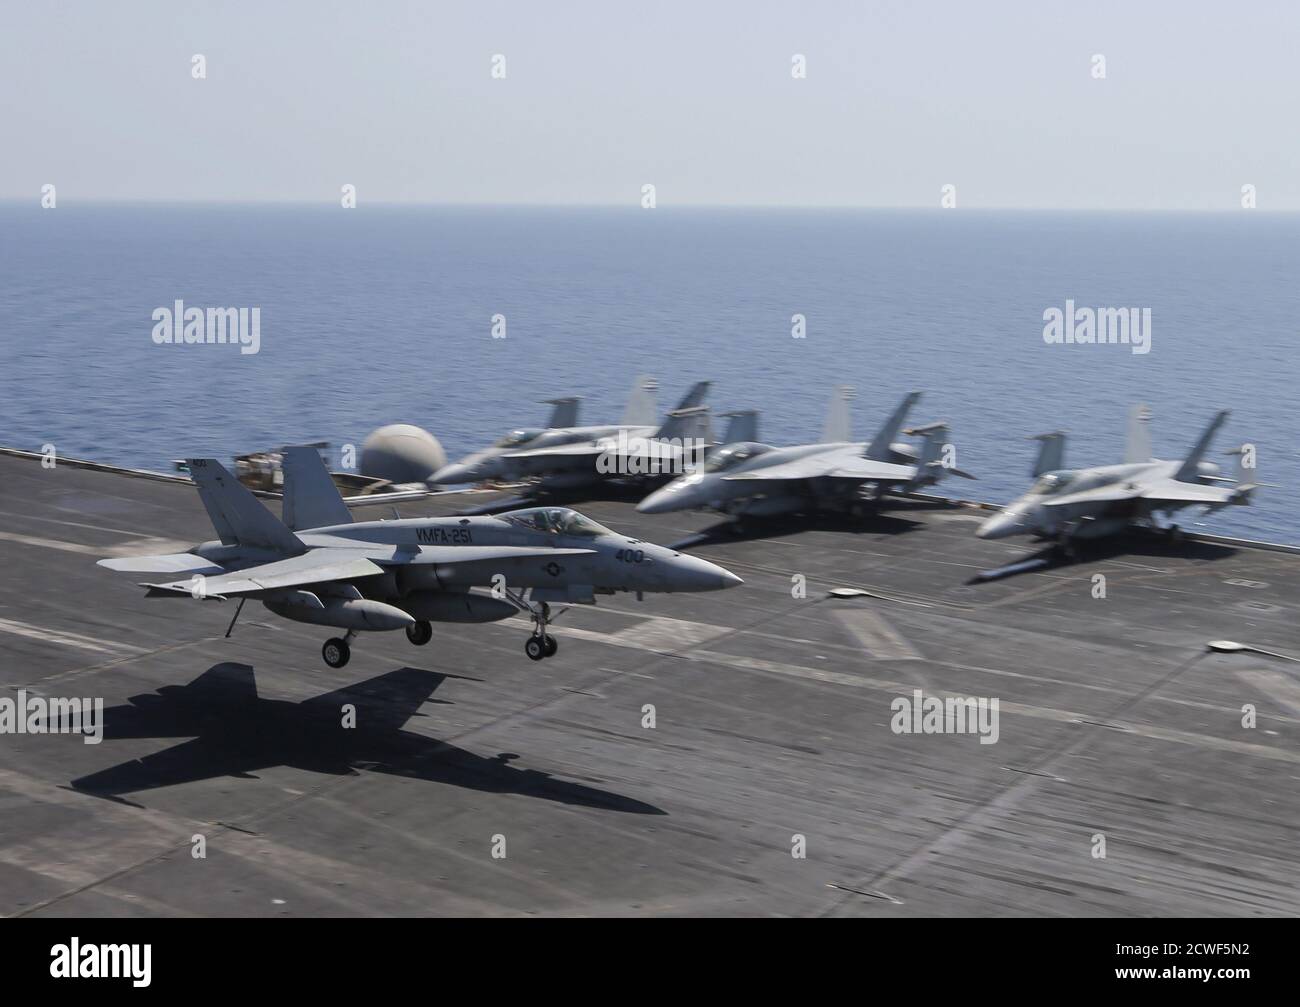 Eine F/A-18C Hornet von Marine Fighter Attack Squadron 251 (VMFA-251) landet auf dem Flugdeck des USS Theodore Roosevelt (CVN-71) Flugzeugträgers im Golf 18. Juni 2015. Die US-amerikanische Fluggesellschaft wird in der Region eingesetzt, um als Plattform zu fungieren, um Schlüsselpositionen zu schlagen, die von den Kämpfern des Islamischen Staats im Irak und in Syrien übernommen wurden, so der Pressesprecher des Schiffes. Bild aufgenommen am 18. Juni 2015. REUTERS/Hamad i Mohammed Stockfoto